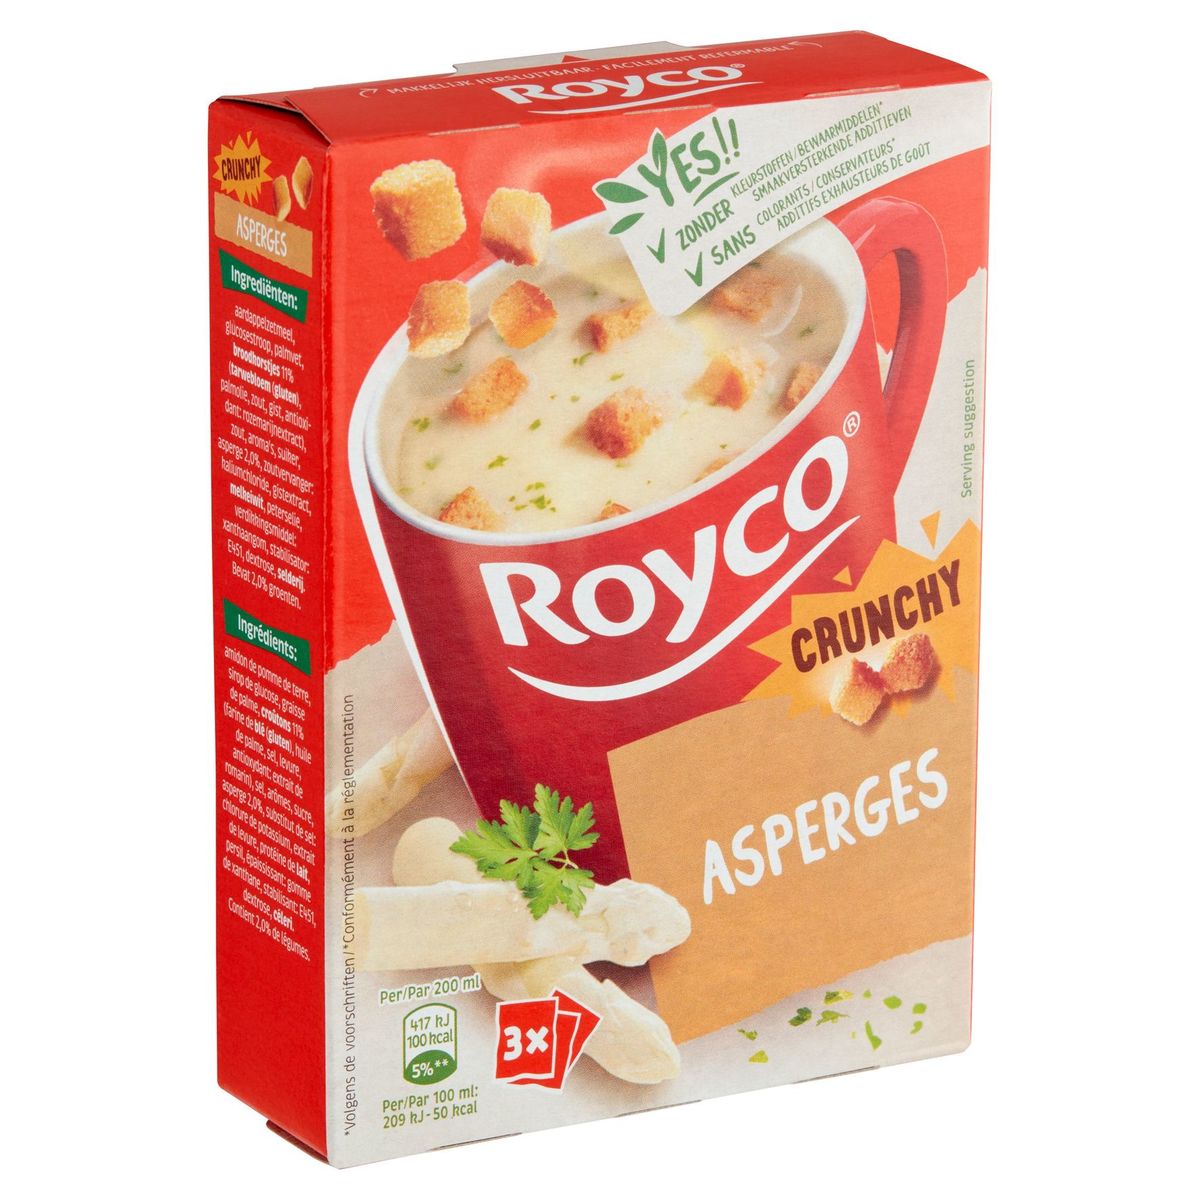 Royco Crunchy Asperges 3 x 20 g